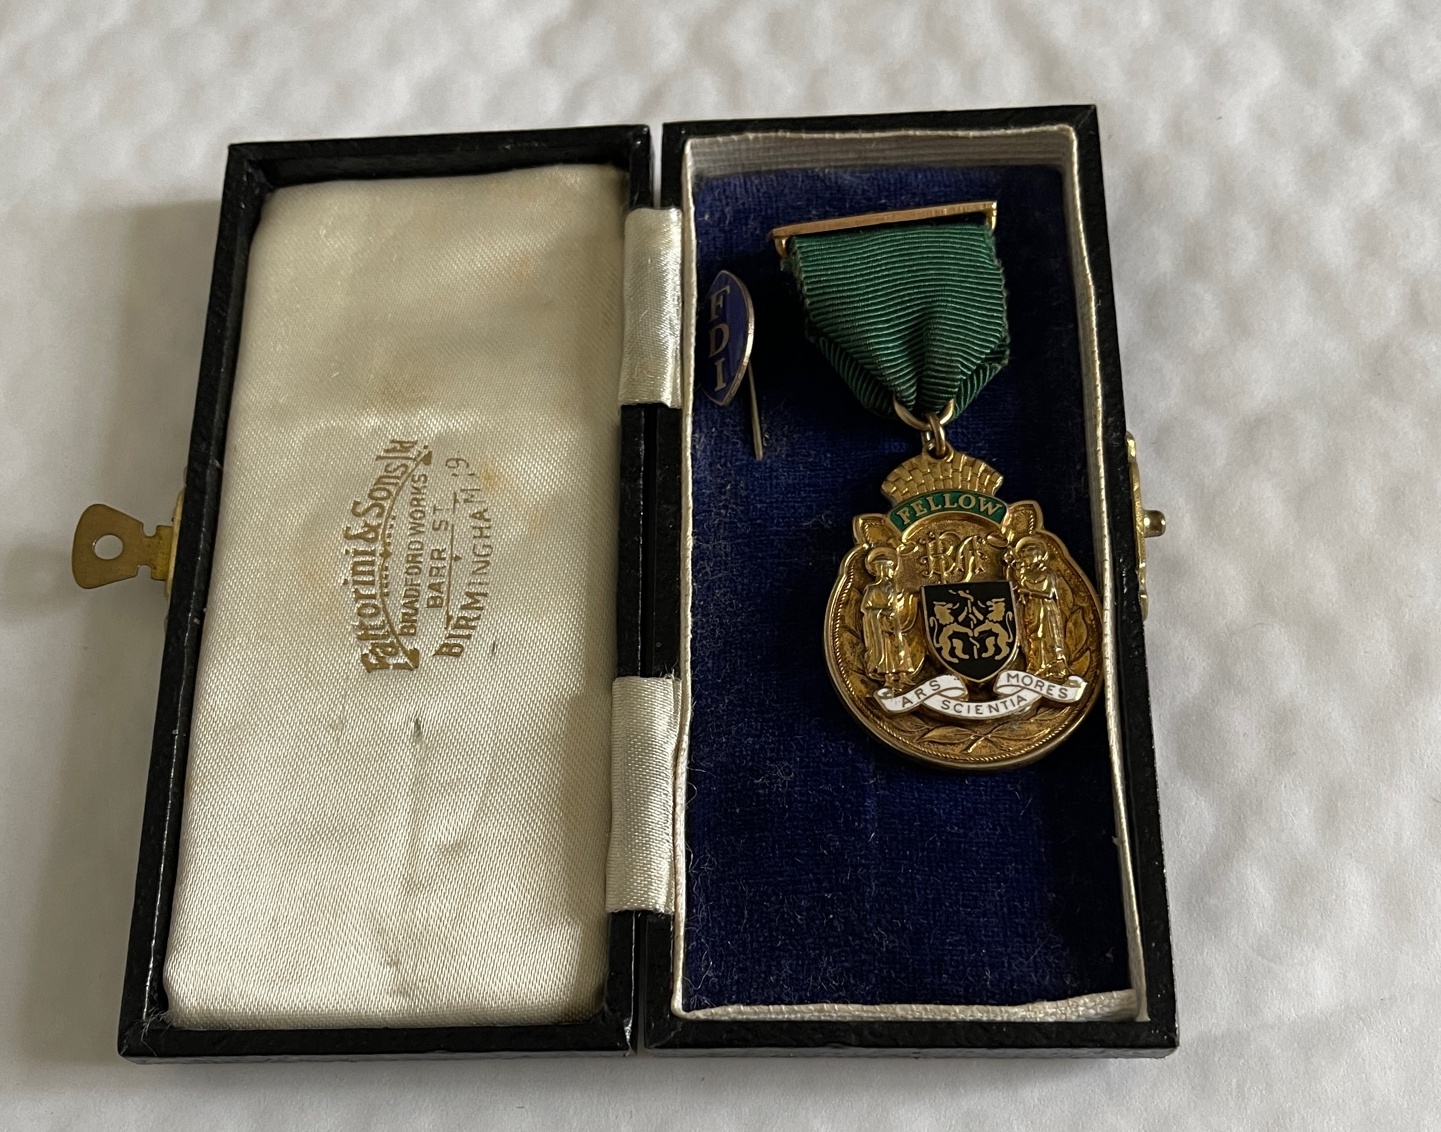 Vintage Boxed FDI Fellow Medal to a Professor J Aitchison 1966.